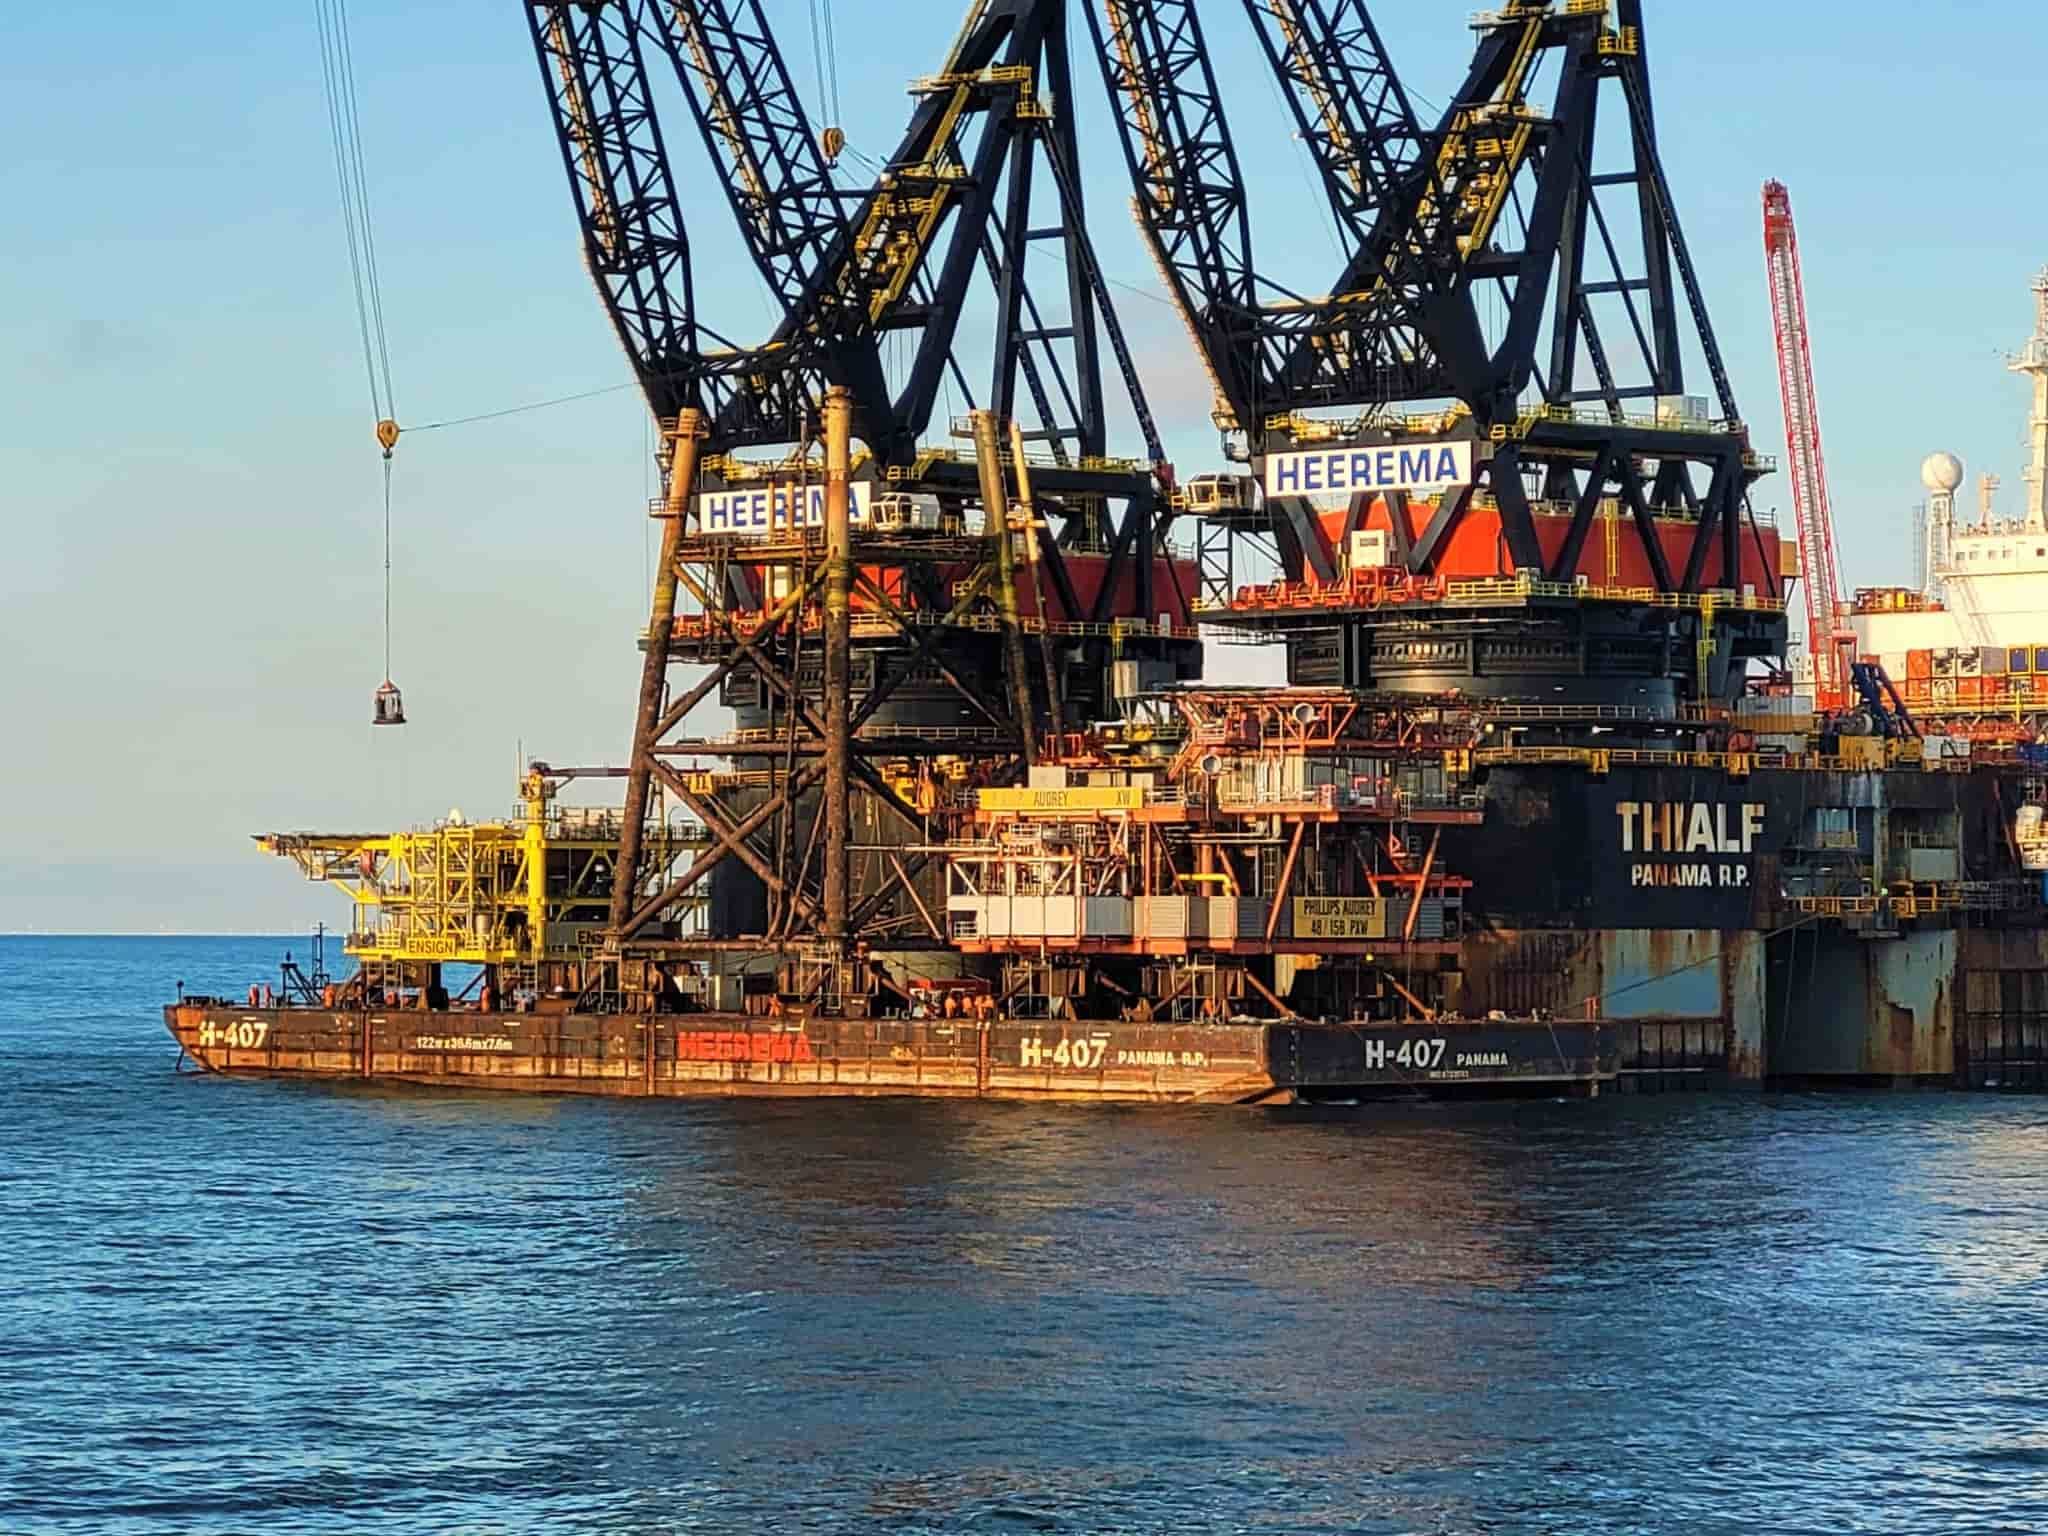 Thialf crane vessel; Source: Heerema Marine Contractors